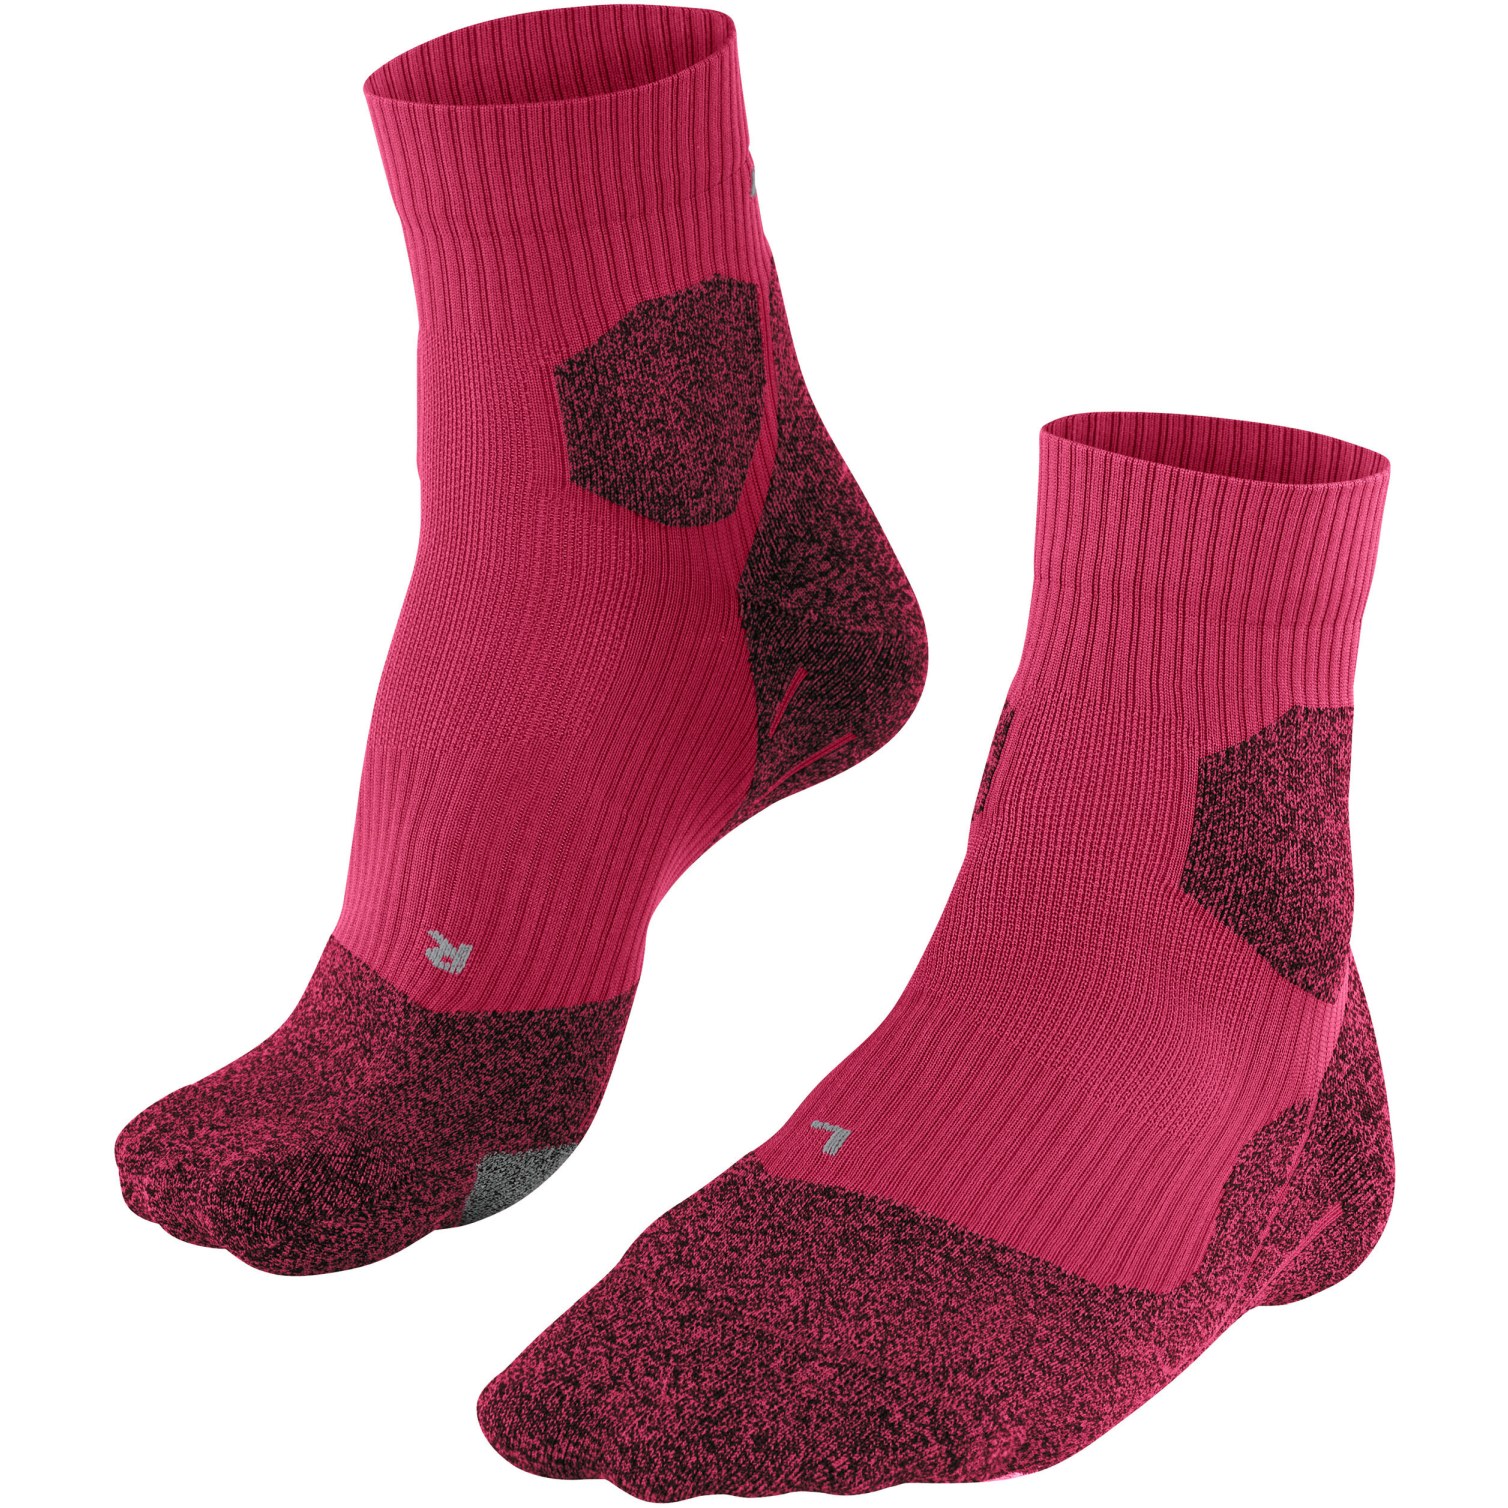 Produktbild von Falke RU Trail Grip Socken Damen - rose 8564